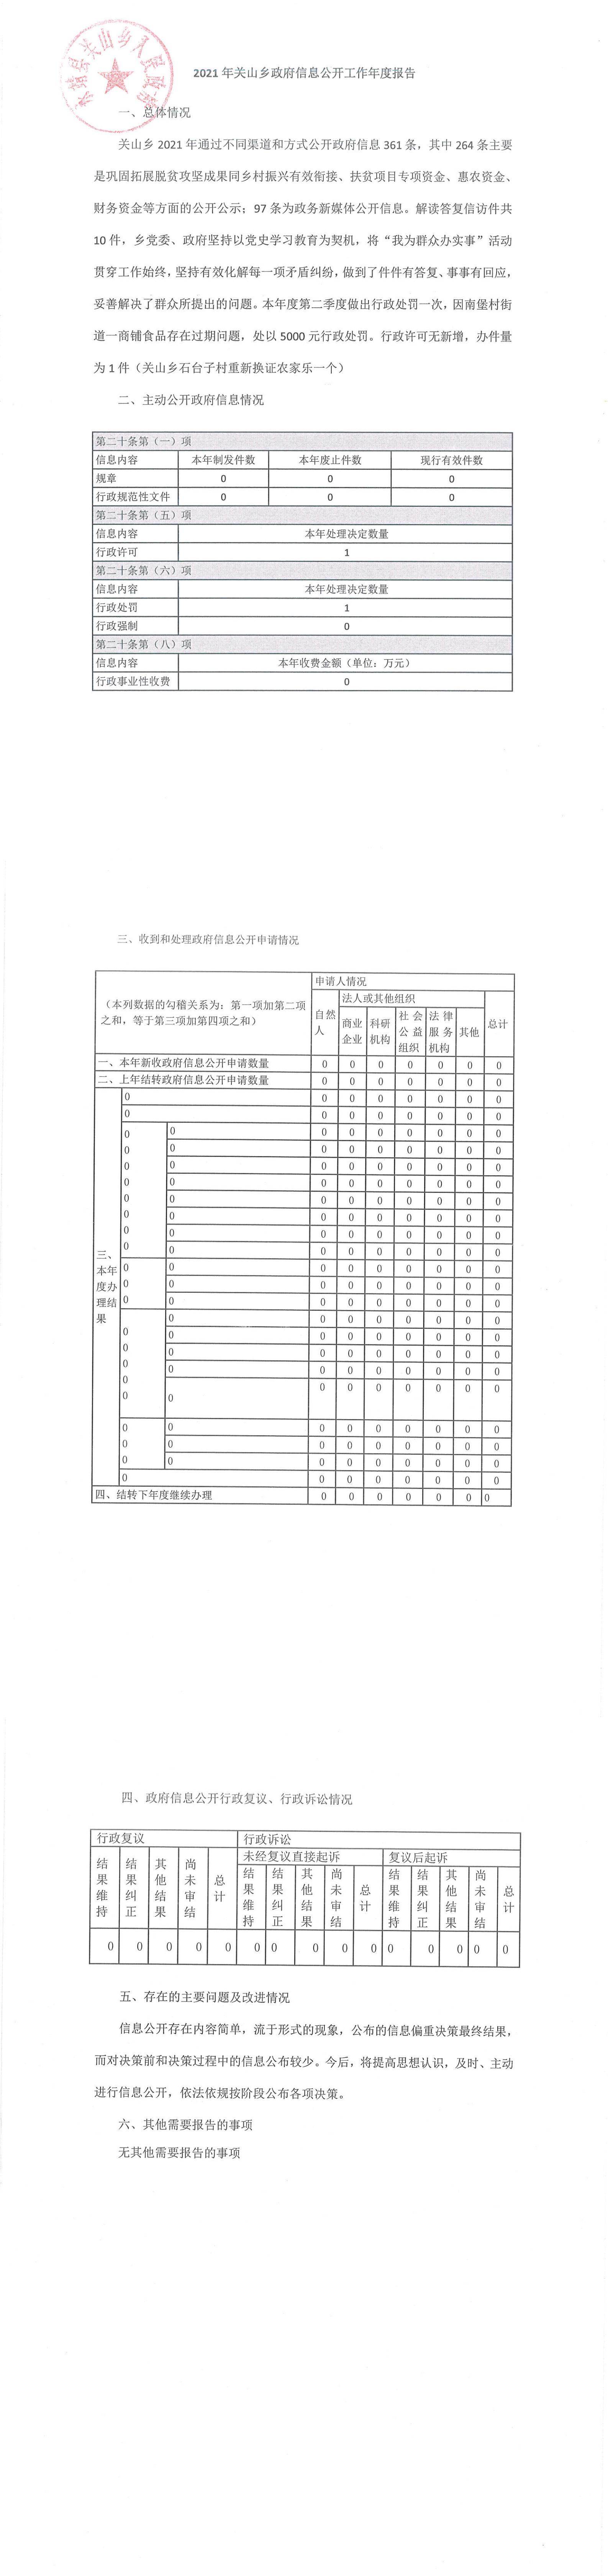 2021年度关山乡政府信息公开工作报告.jpg